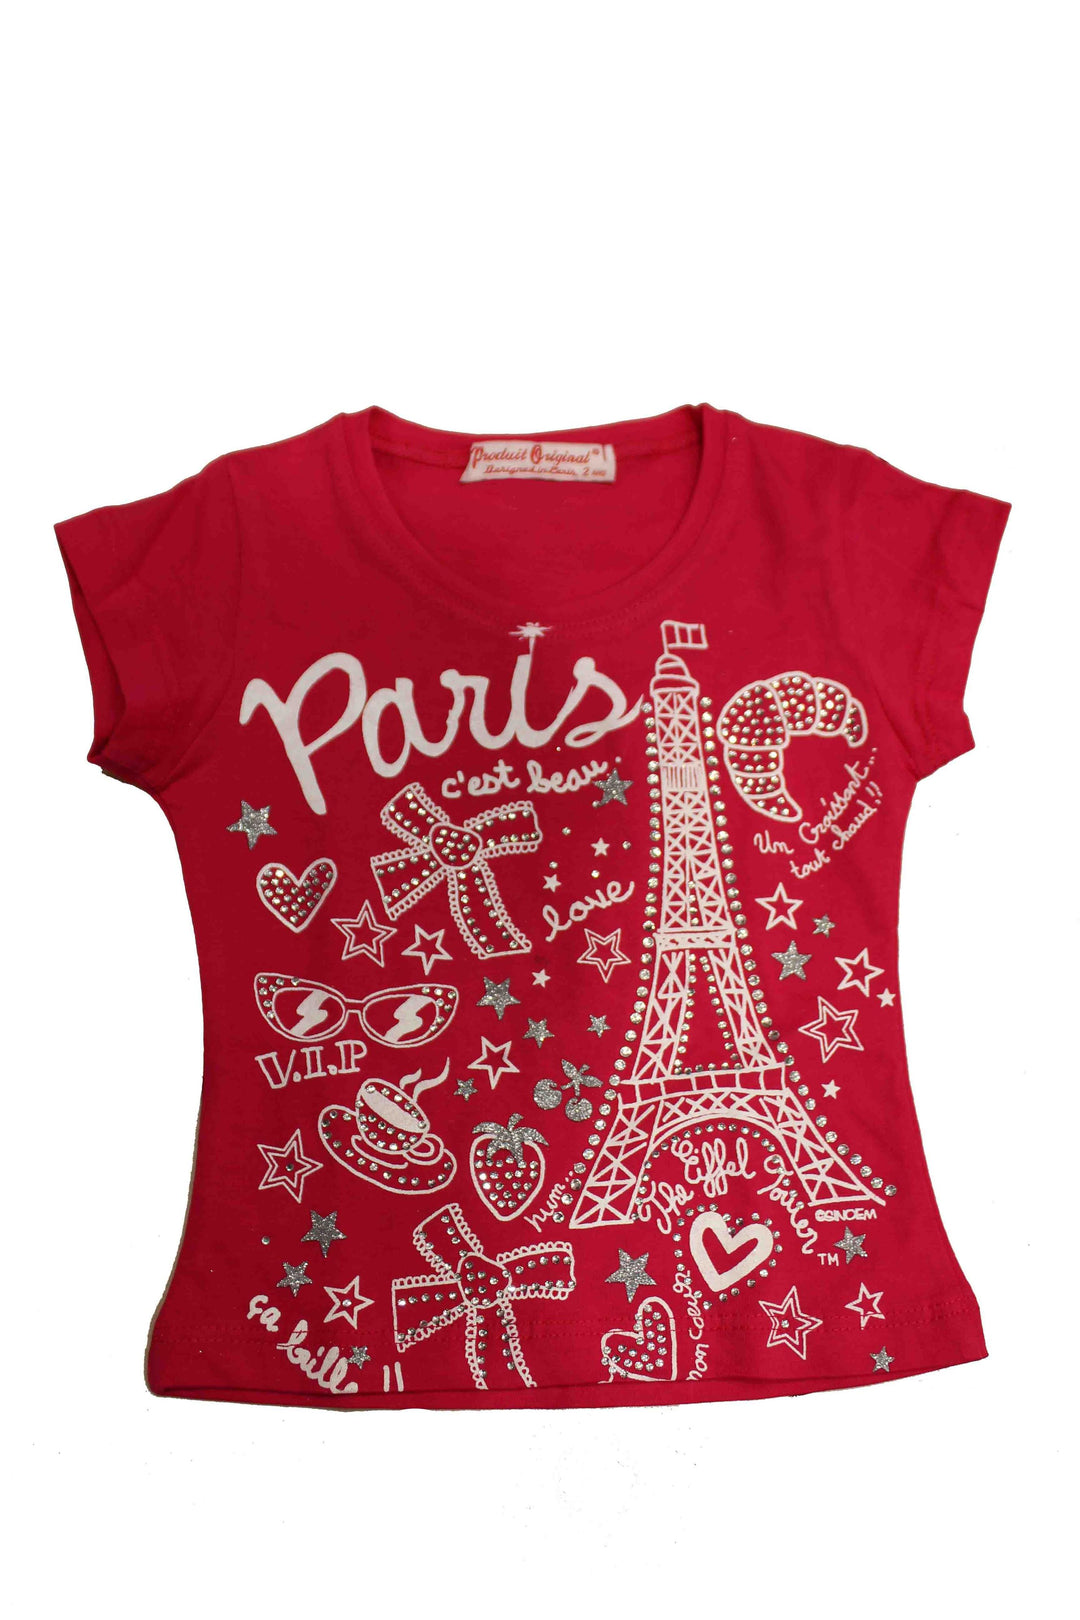 T-shirts pour Enfant - Souvenirs de Paris PARICI – Souvenir Paris